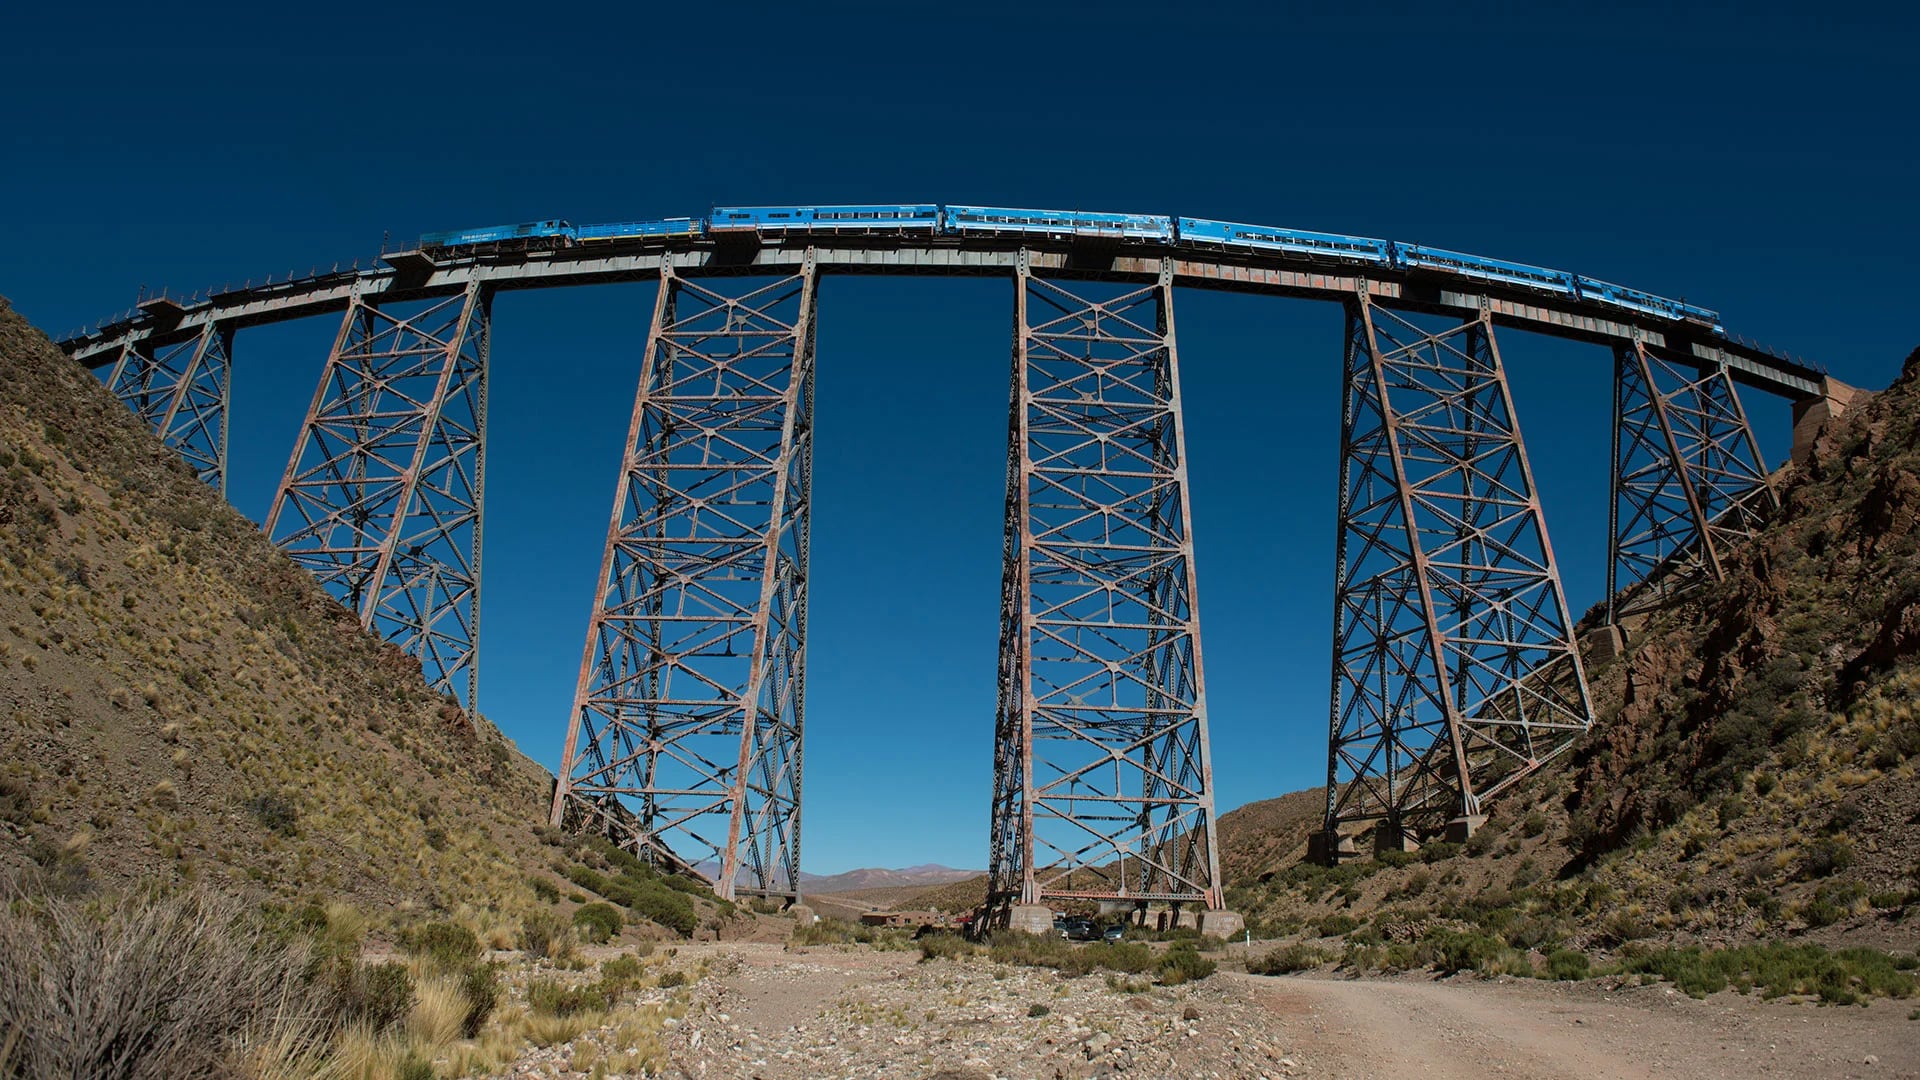 Tren a las Nubes. Uno de los más altos del mundo, desde San Antonio de los Cobres hasta el Viaducto la Polvorilla (a 4200 msnm) ofrece un recorrido único por los escenarios salteños (Carlos Vergara)